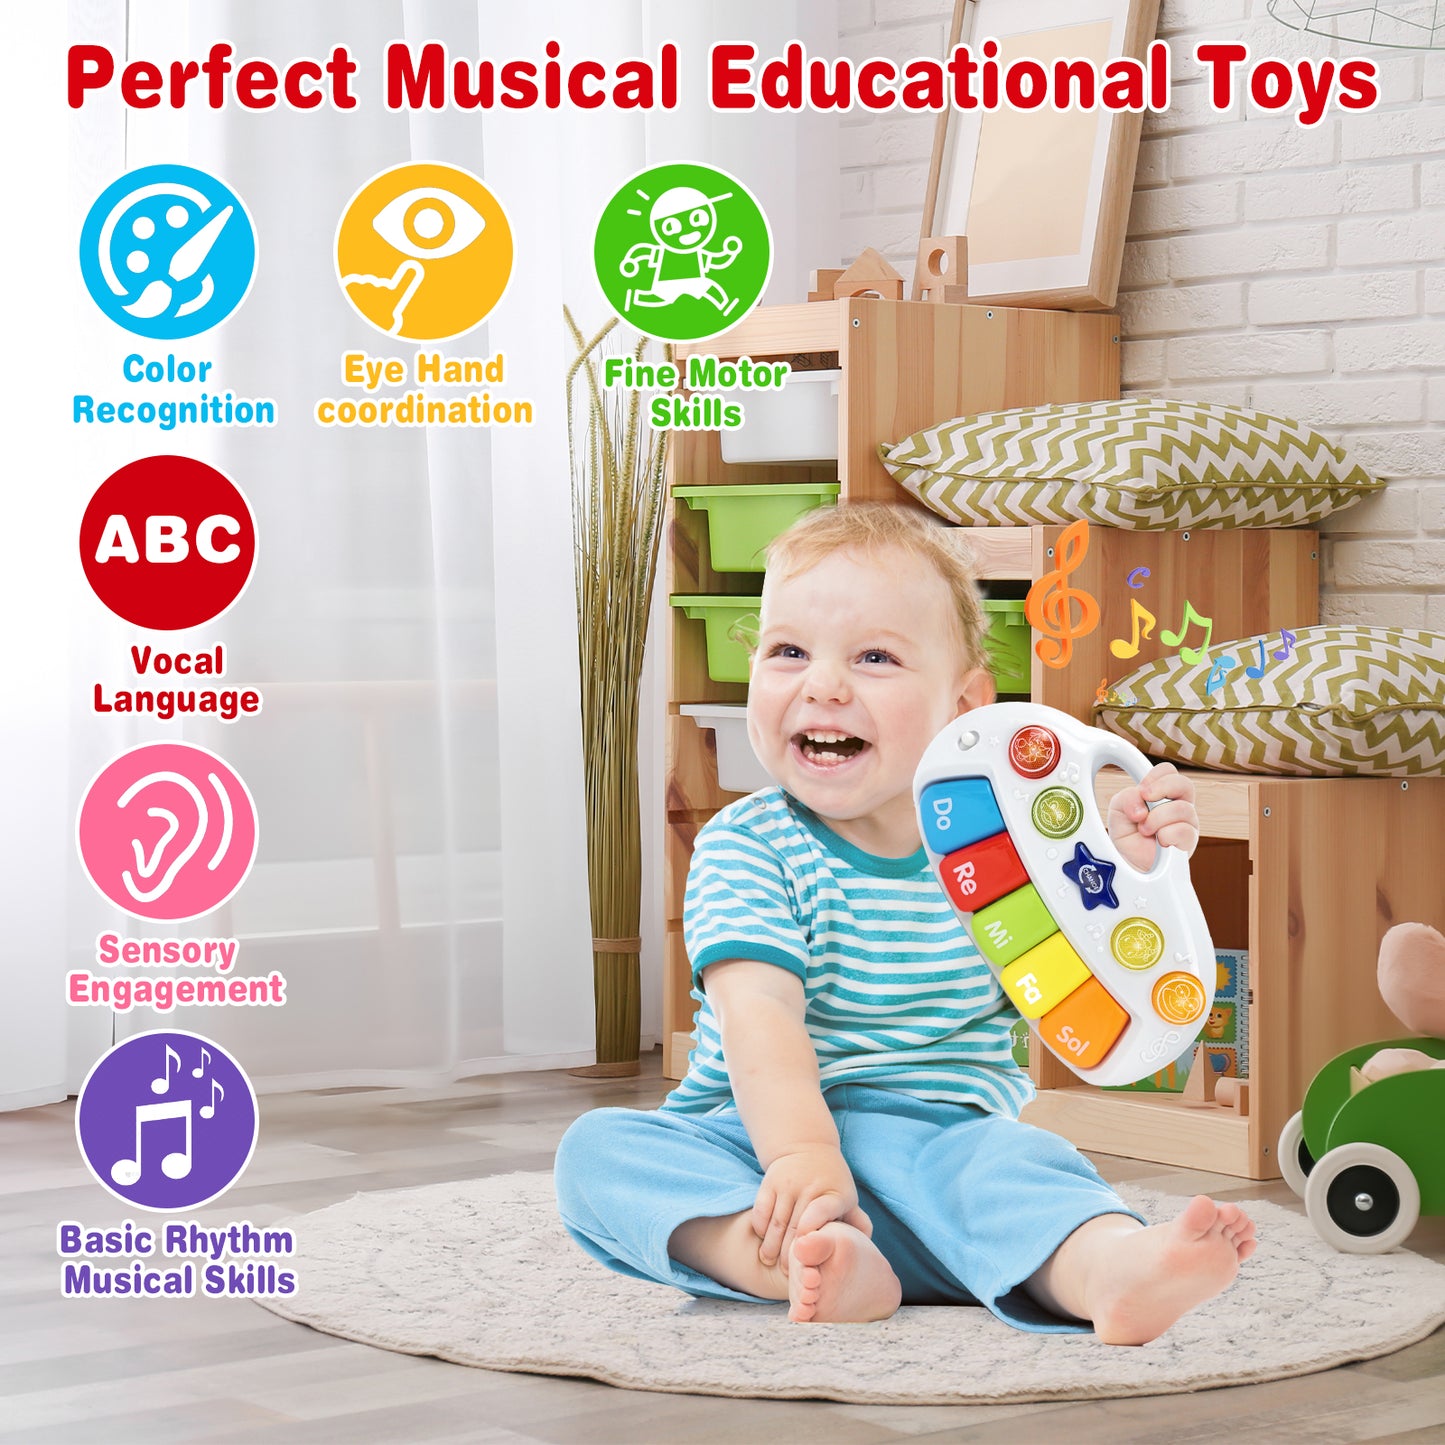 5-Tasten-Spielzeug für elektronische Tastaturen, Musikspielzeug, lustige elektronische Tastaturen für Kinder, Spielzeug zur Aufklärung von Musikinteressen